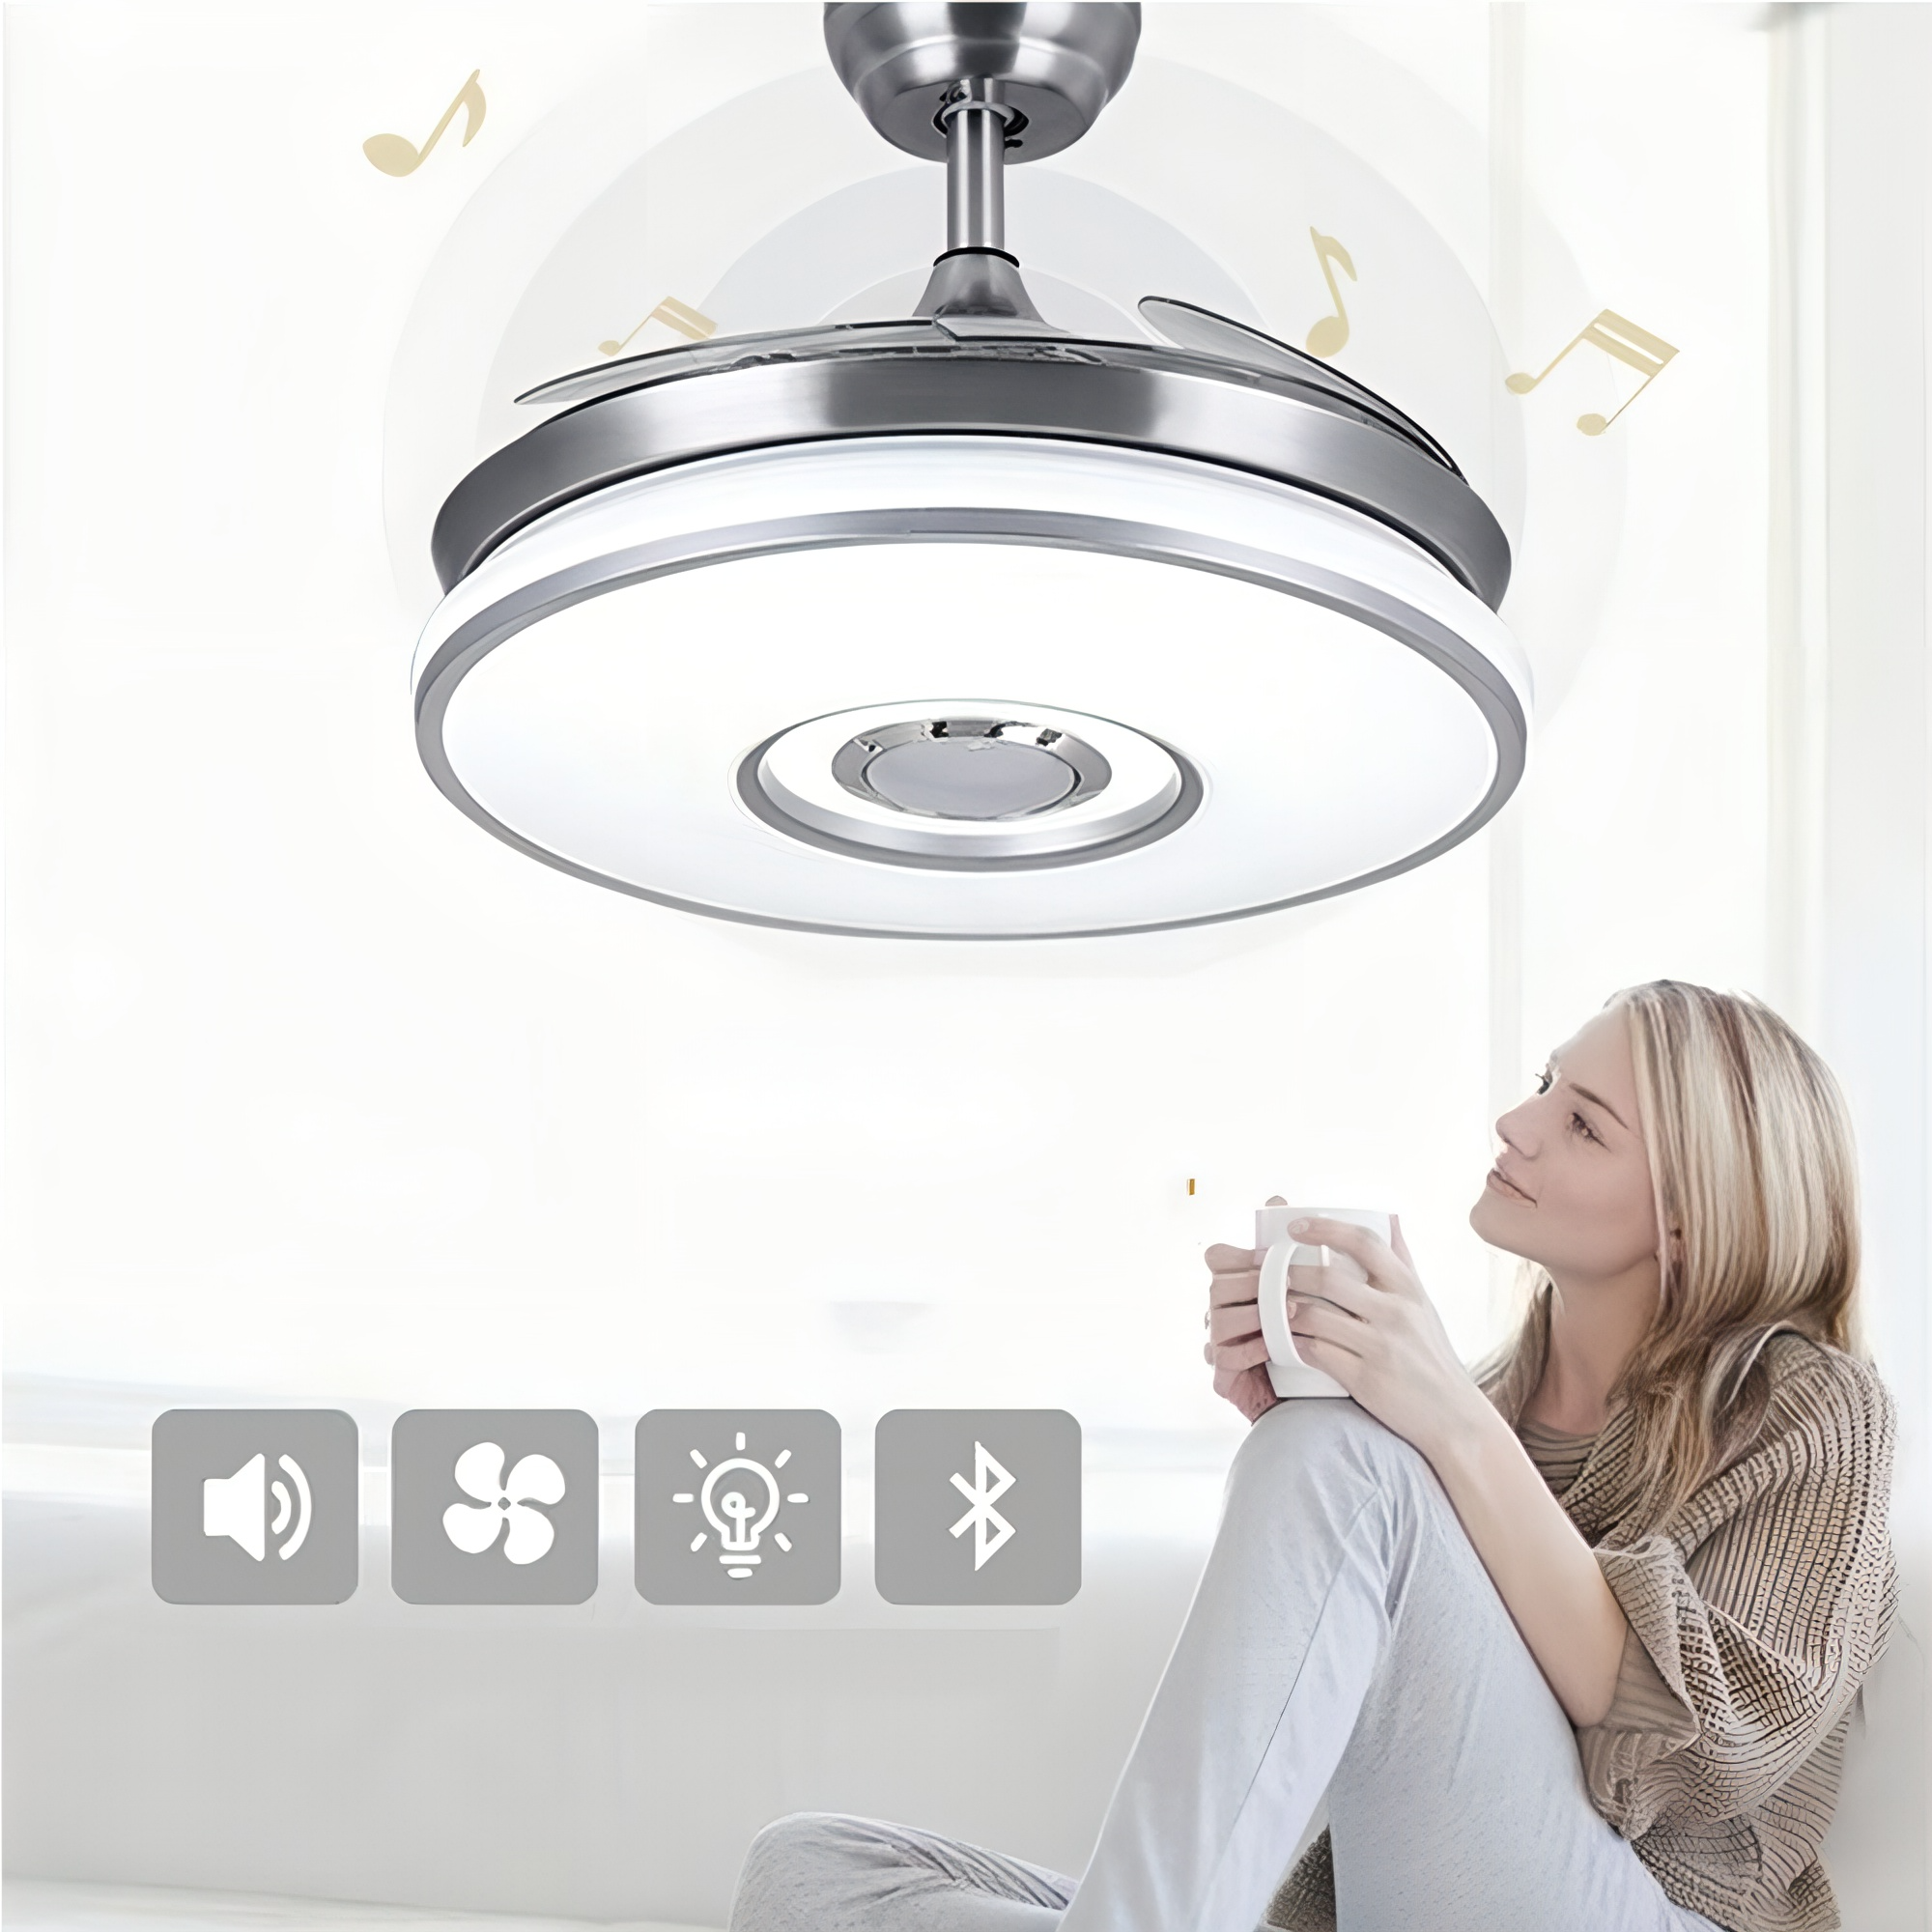 Ceiling Fan with Bluetooth Speaker